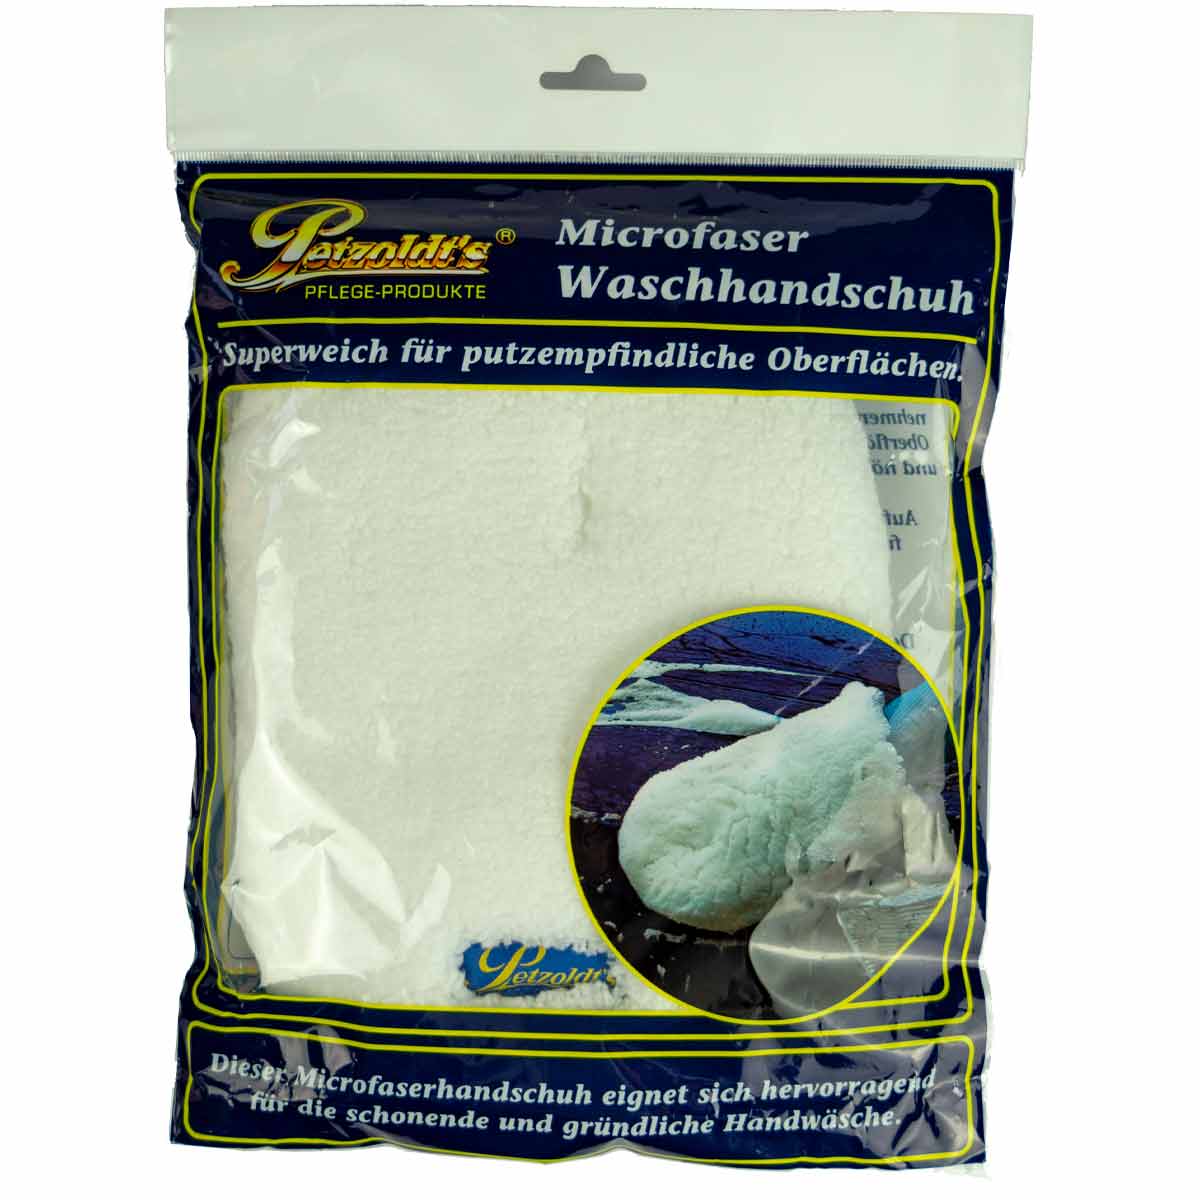 Petzoldts Microfaser Waschhandschuh